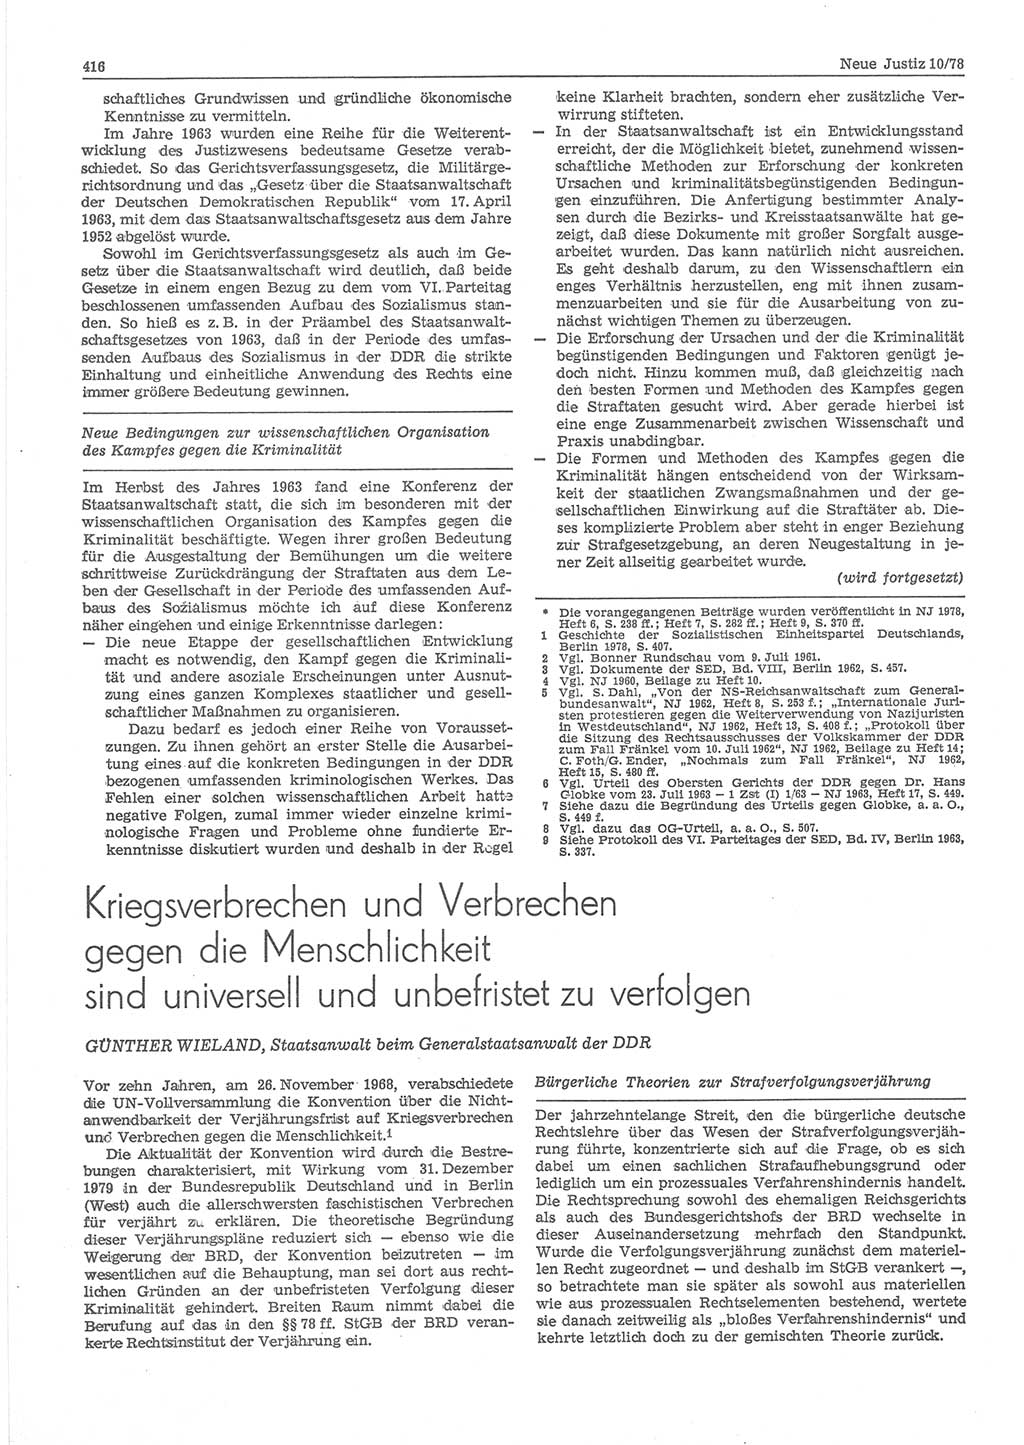 Neue Justiz (NJ), Zeitschrift für sozialistisches Recht und Gesetzlichkeit [Deutsche Demokratische Republik (DDR)], 32. Jahrgang 1978, Seite 416 (NJ DDR 1978, S. 416)